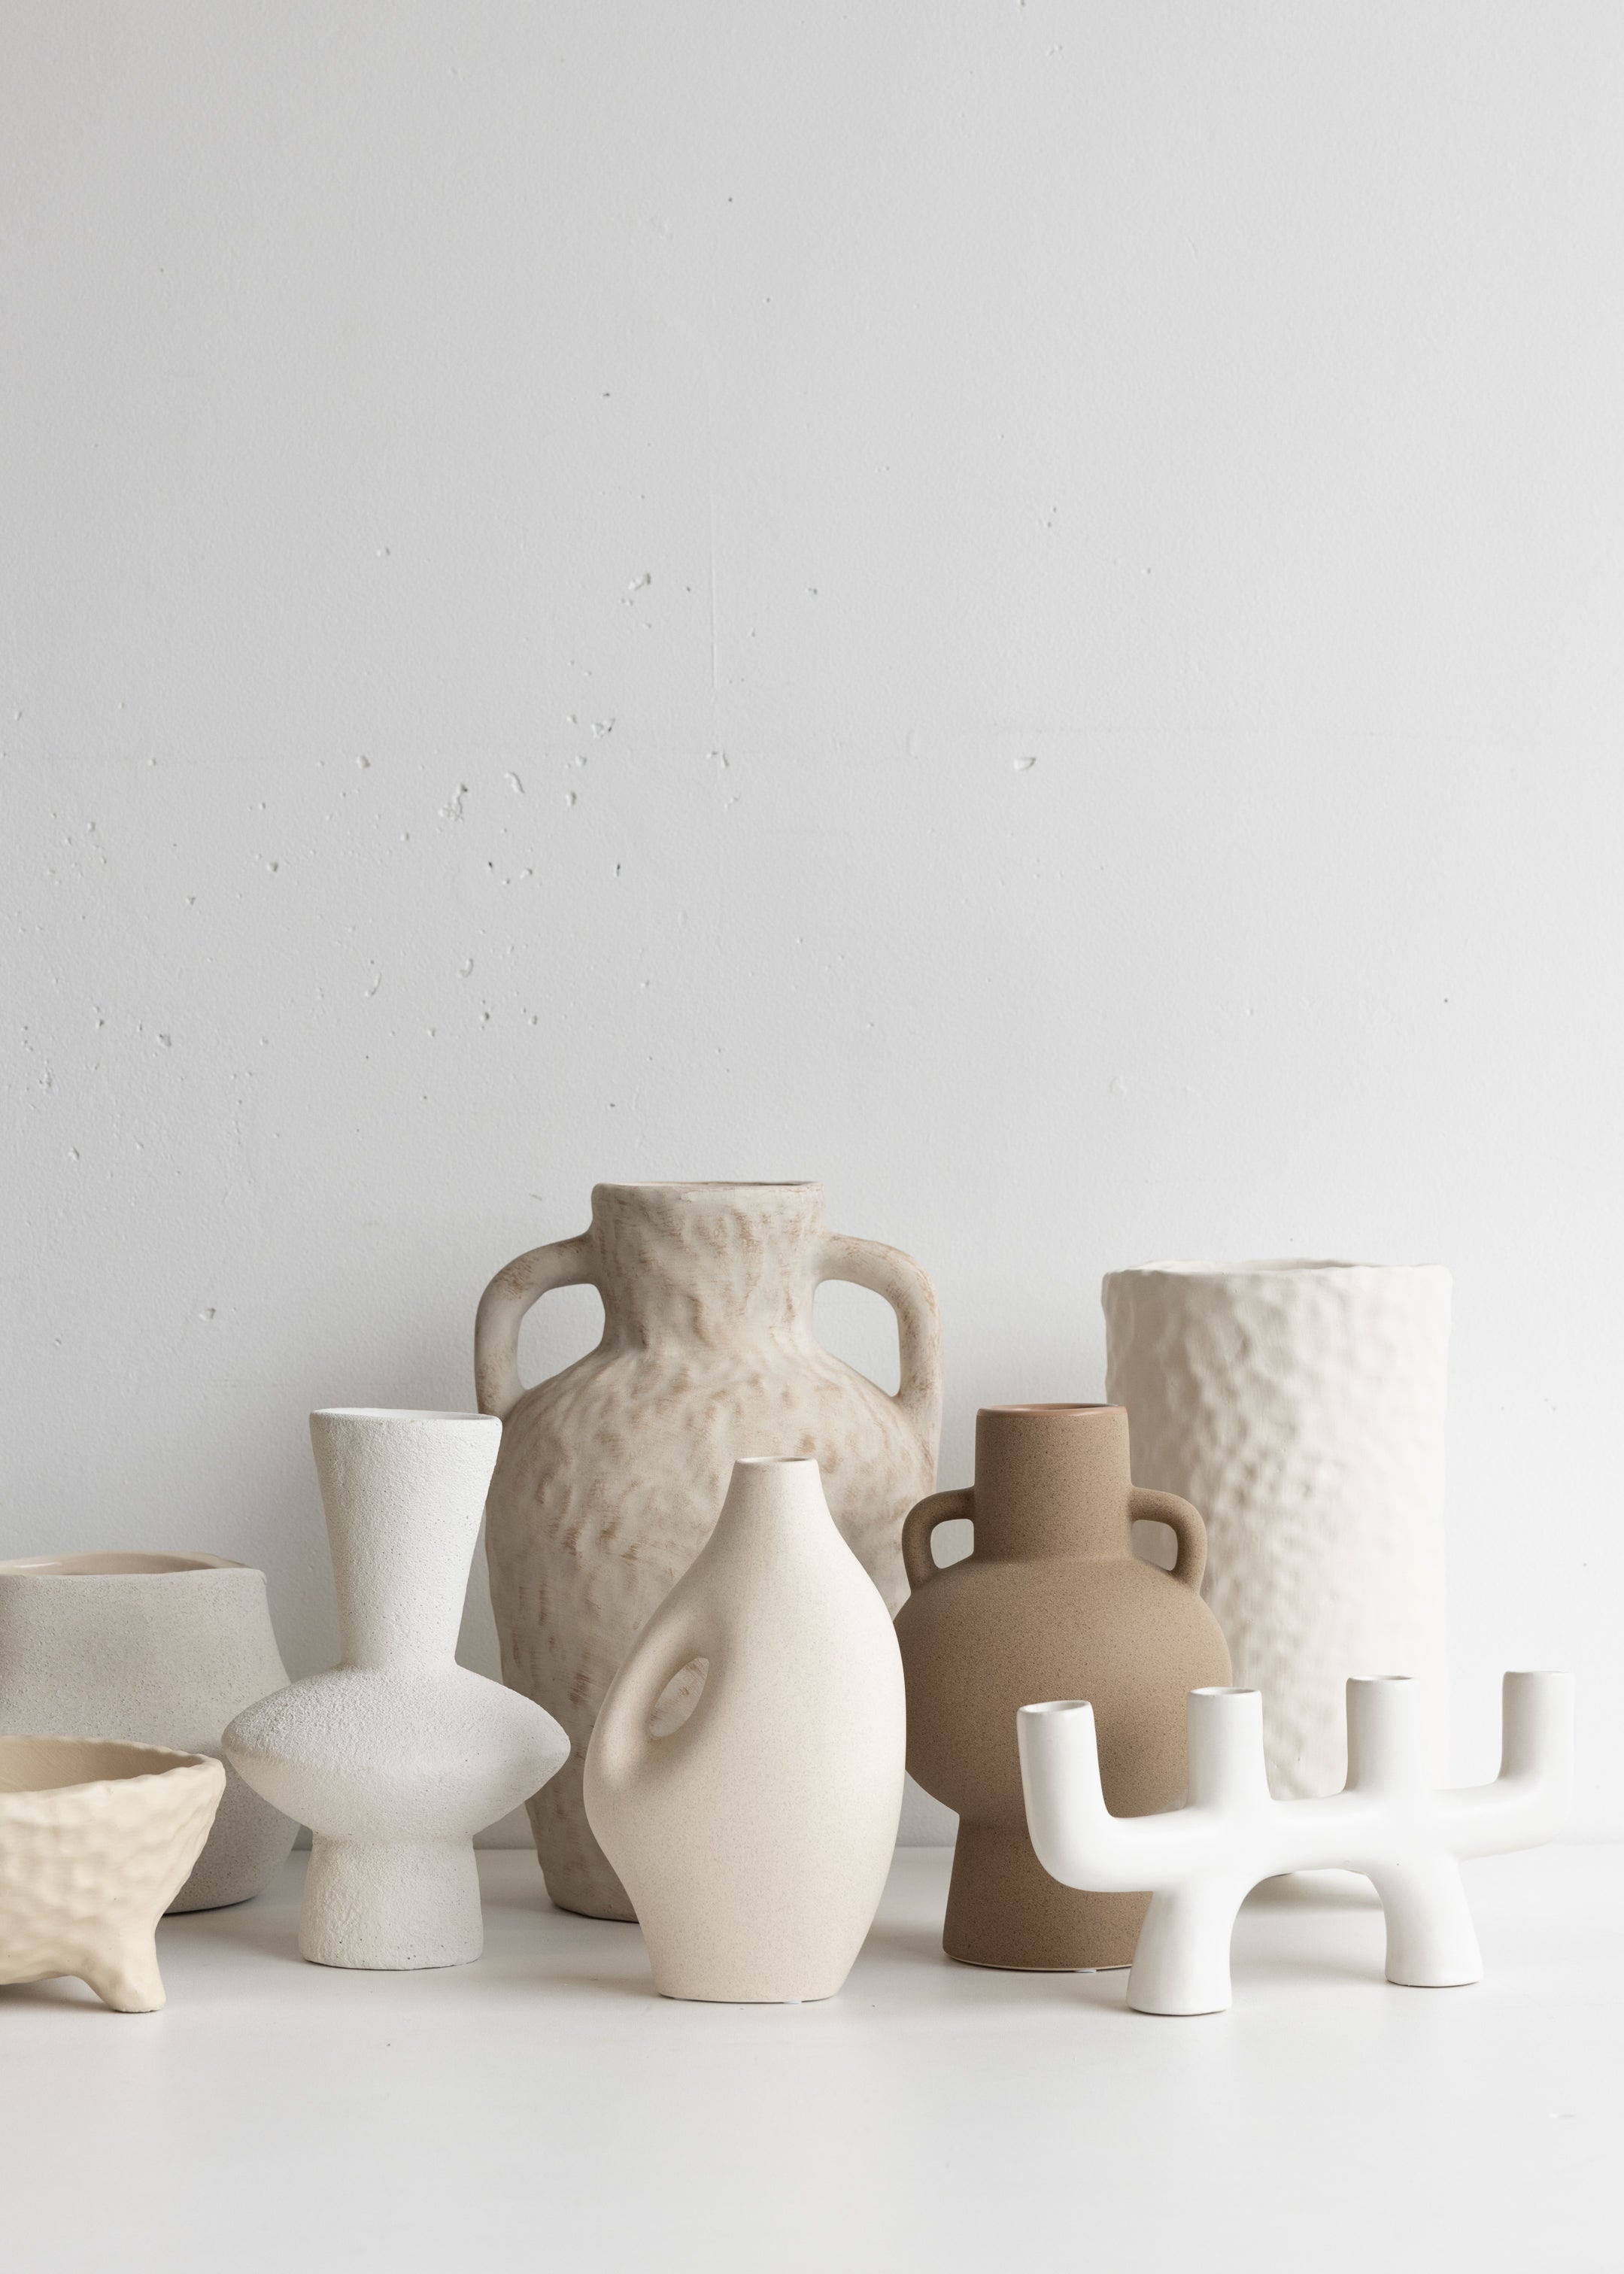 Rustic Ceramic Vase with Handles